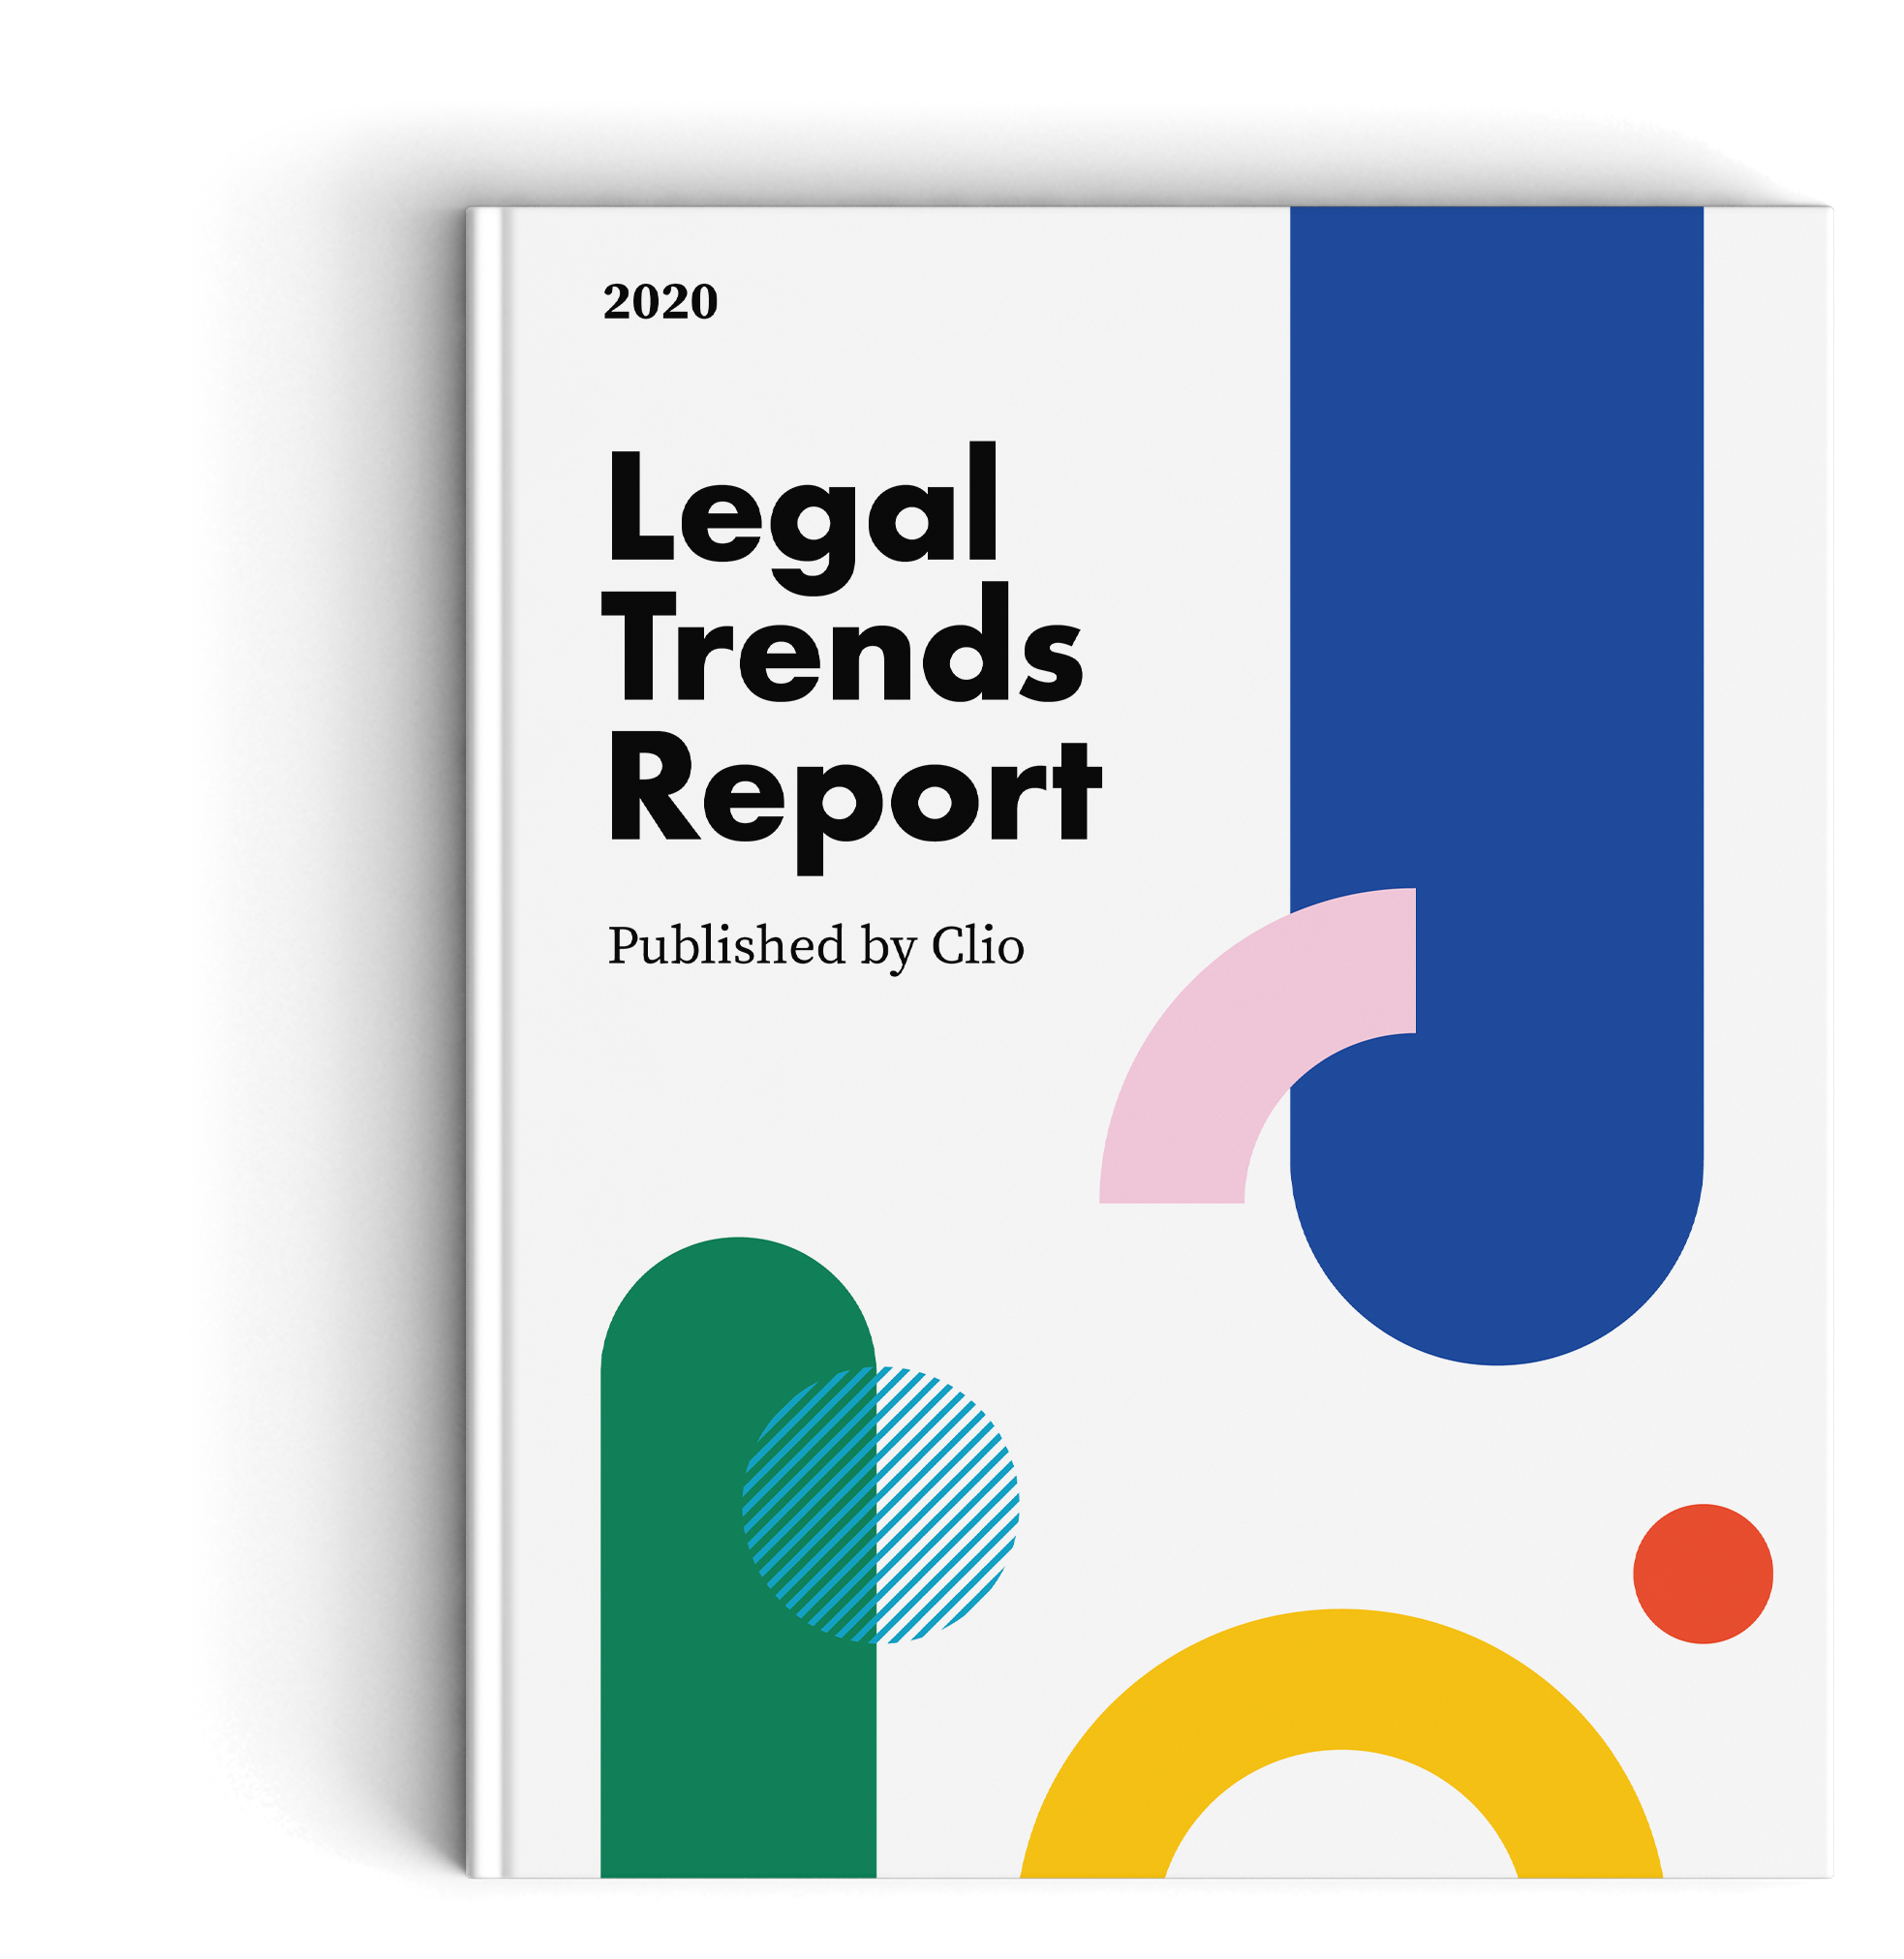 Clio 2020 Legal Trends Report